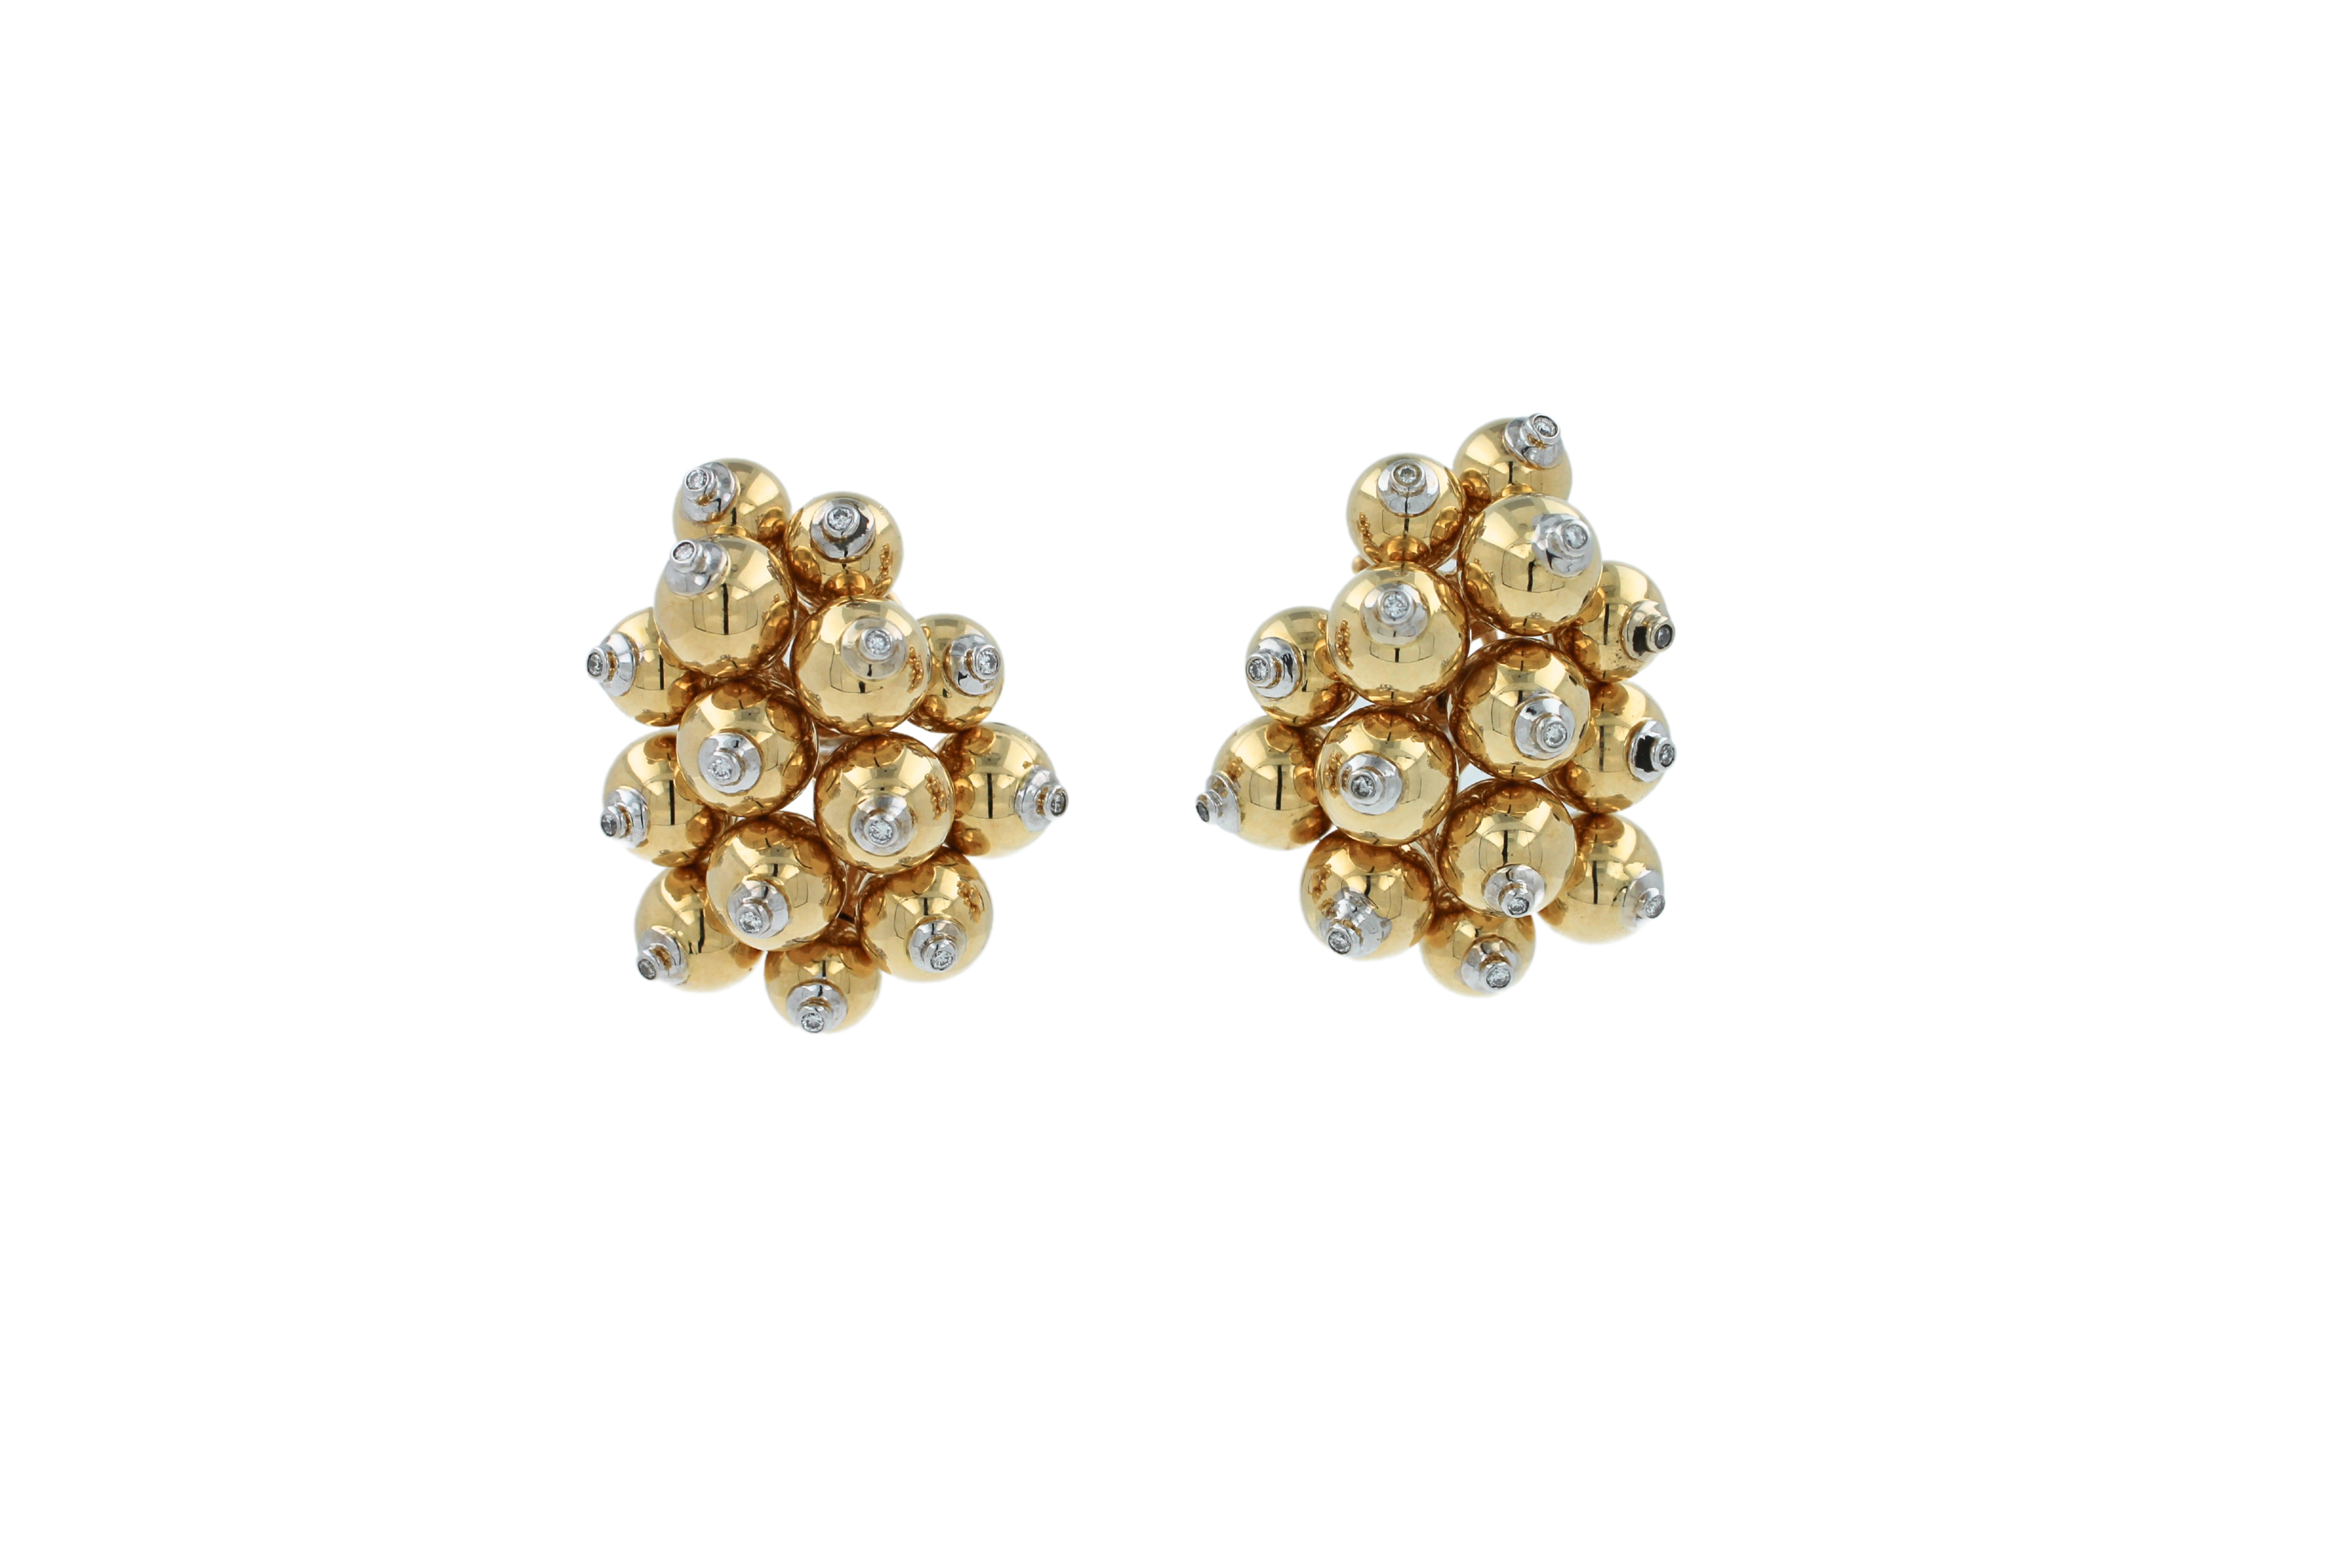 Modern Diamonds Golden Spheres Gold Balls Geometric Bells Motif 18K Gold Earrings For Sale